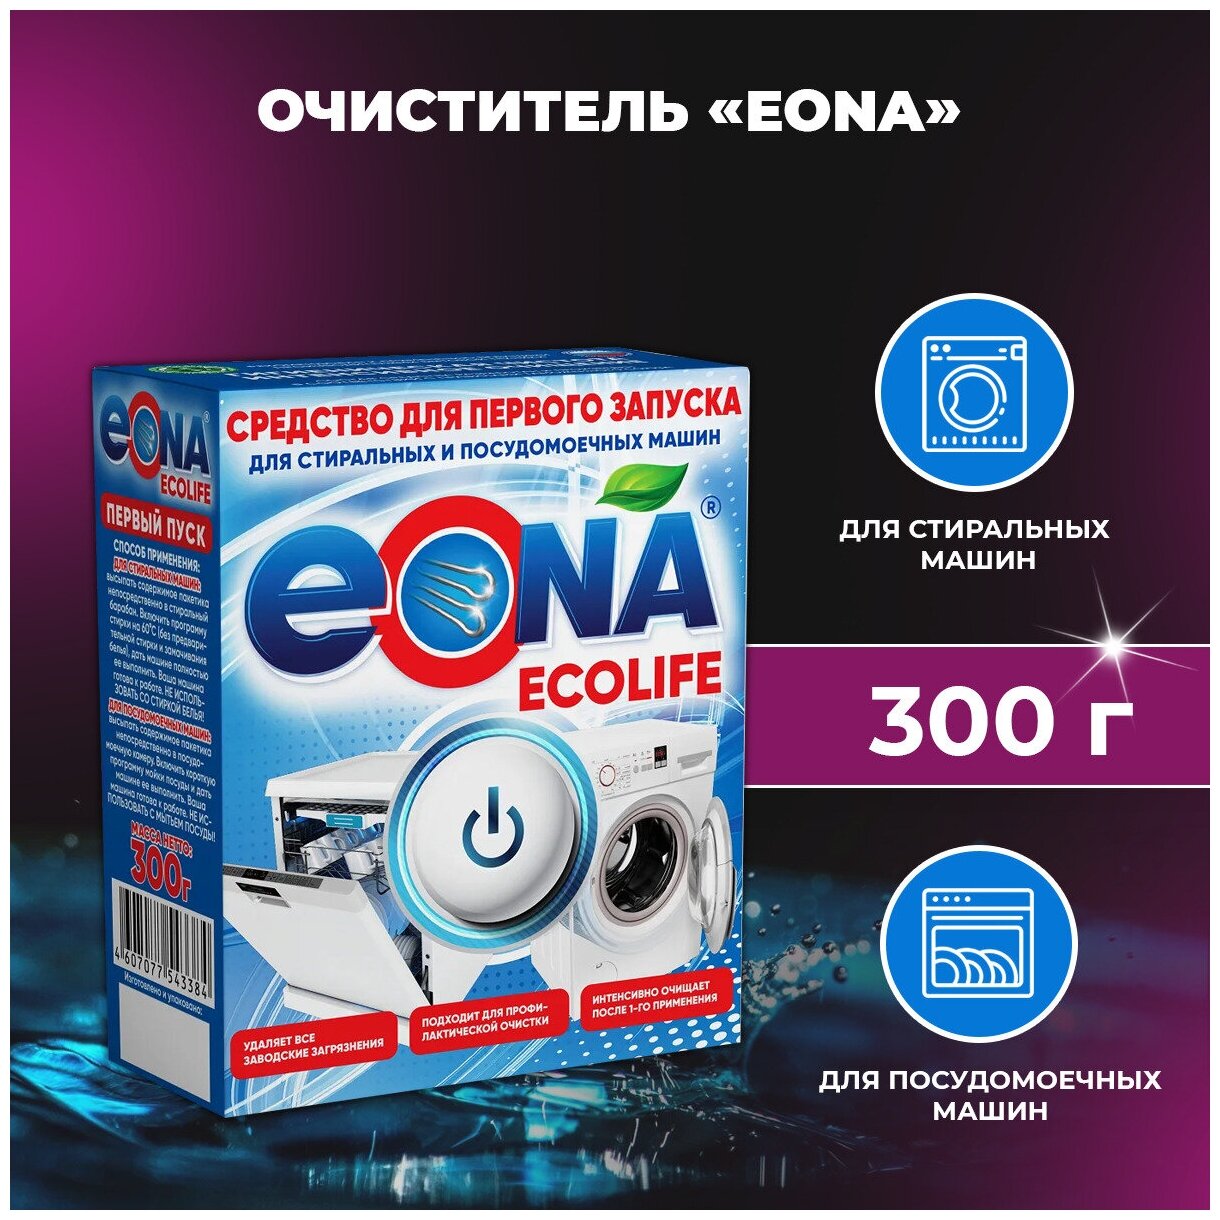 Средство для первого запуска очиститель для стиральной и посудомоечной машины EONA Ecolife 300 г